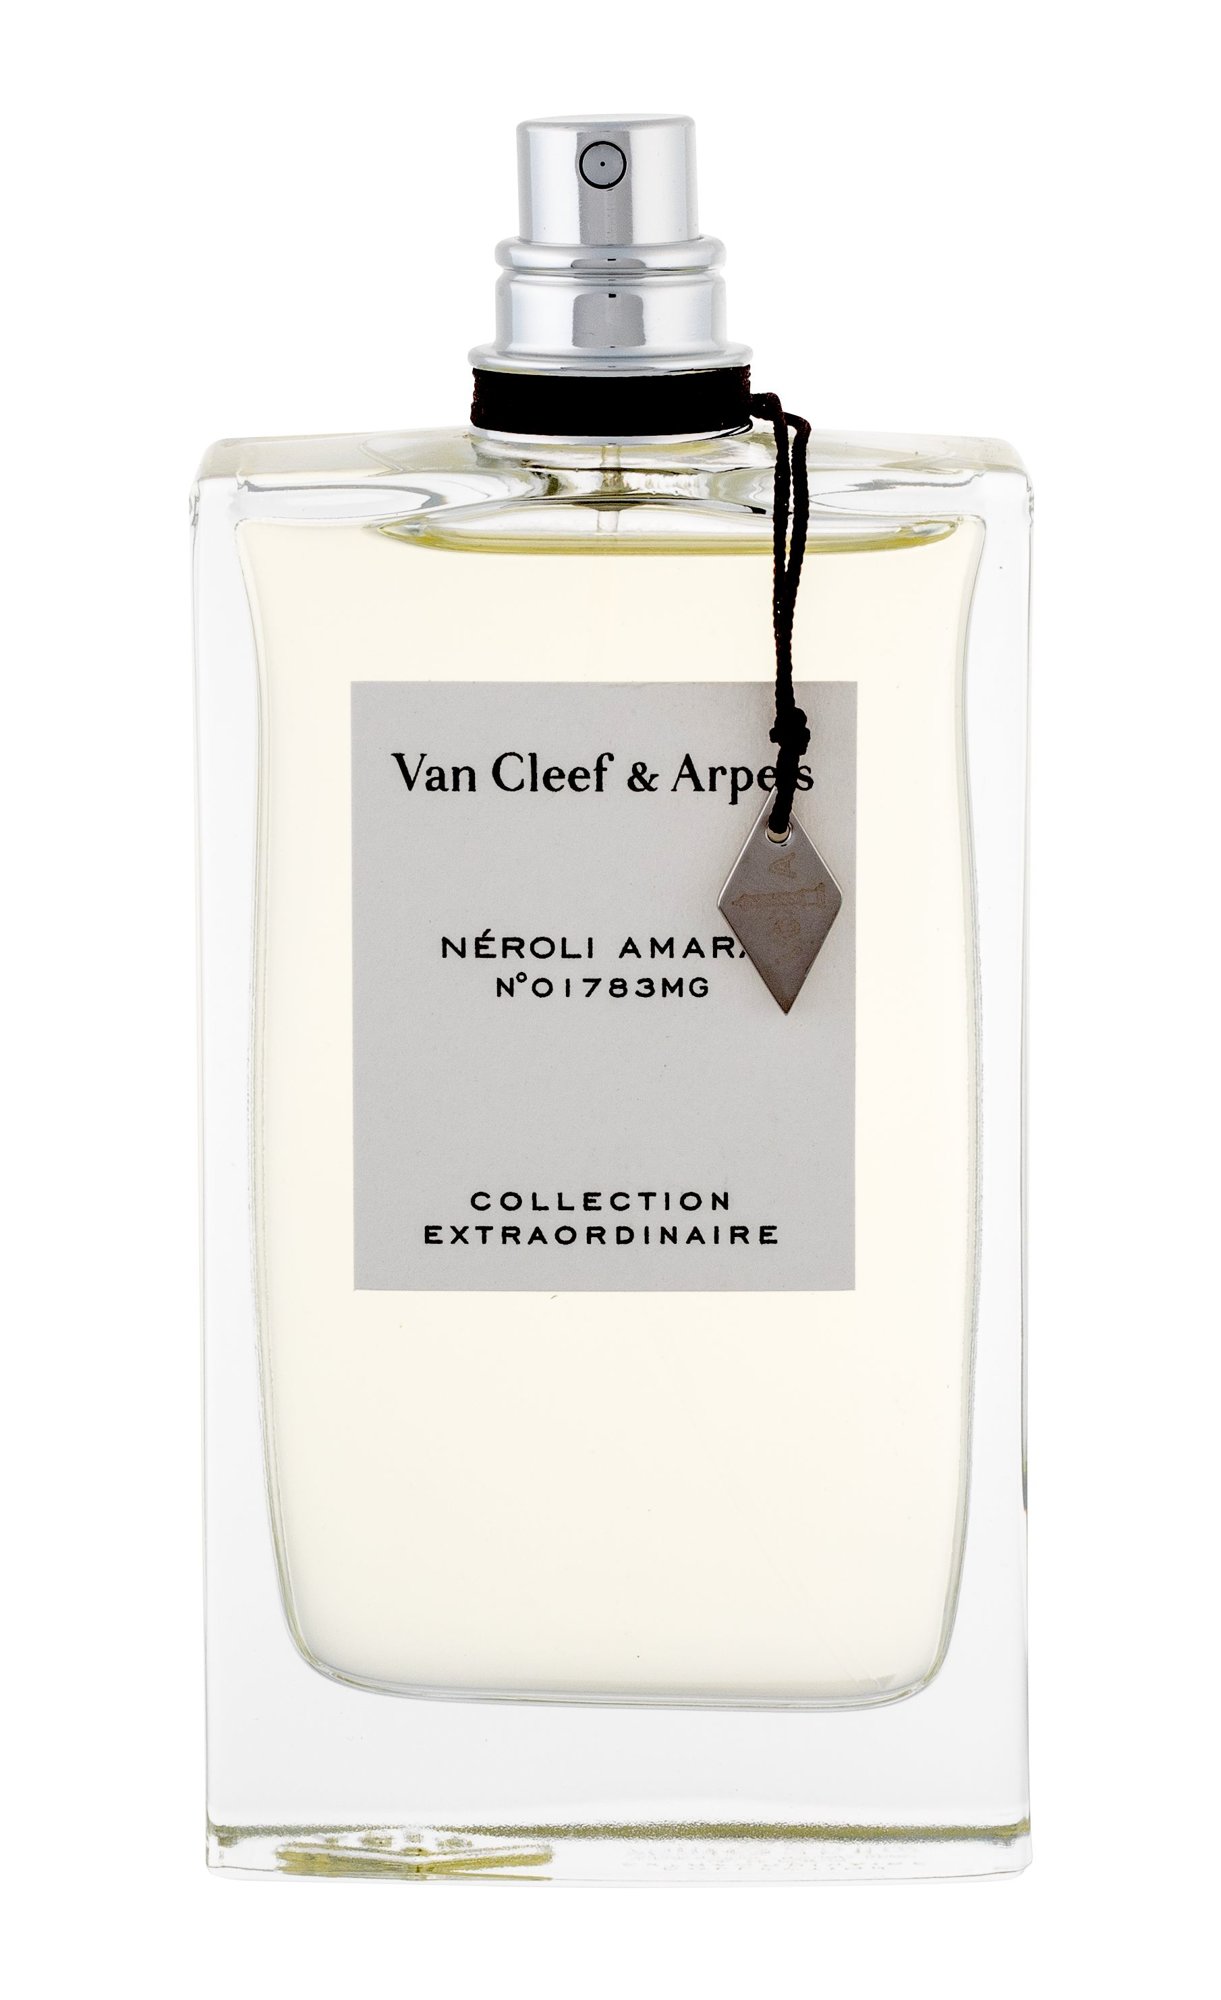 Van Cleef & Arpels Collection Extraordinaire Néroli Amara, Vzorek vůně 2ml